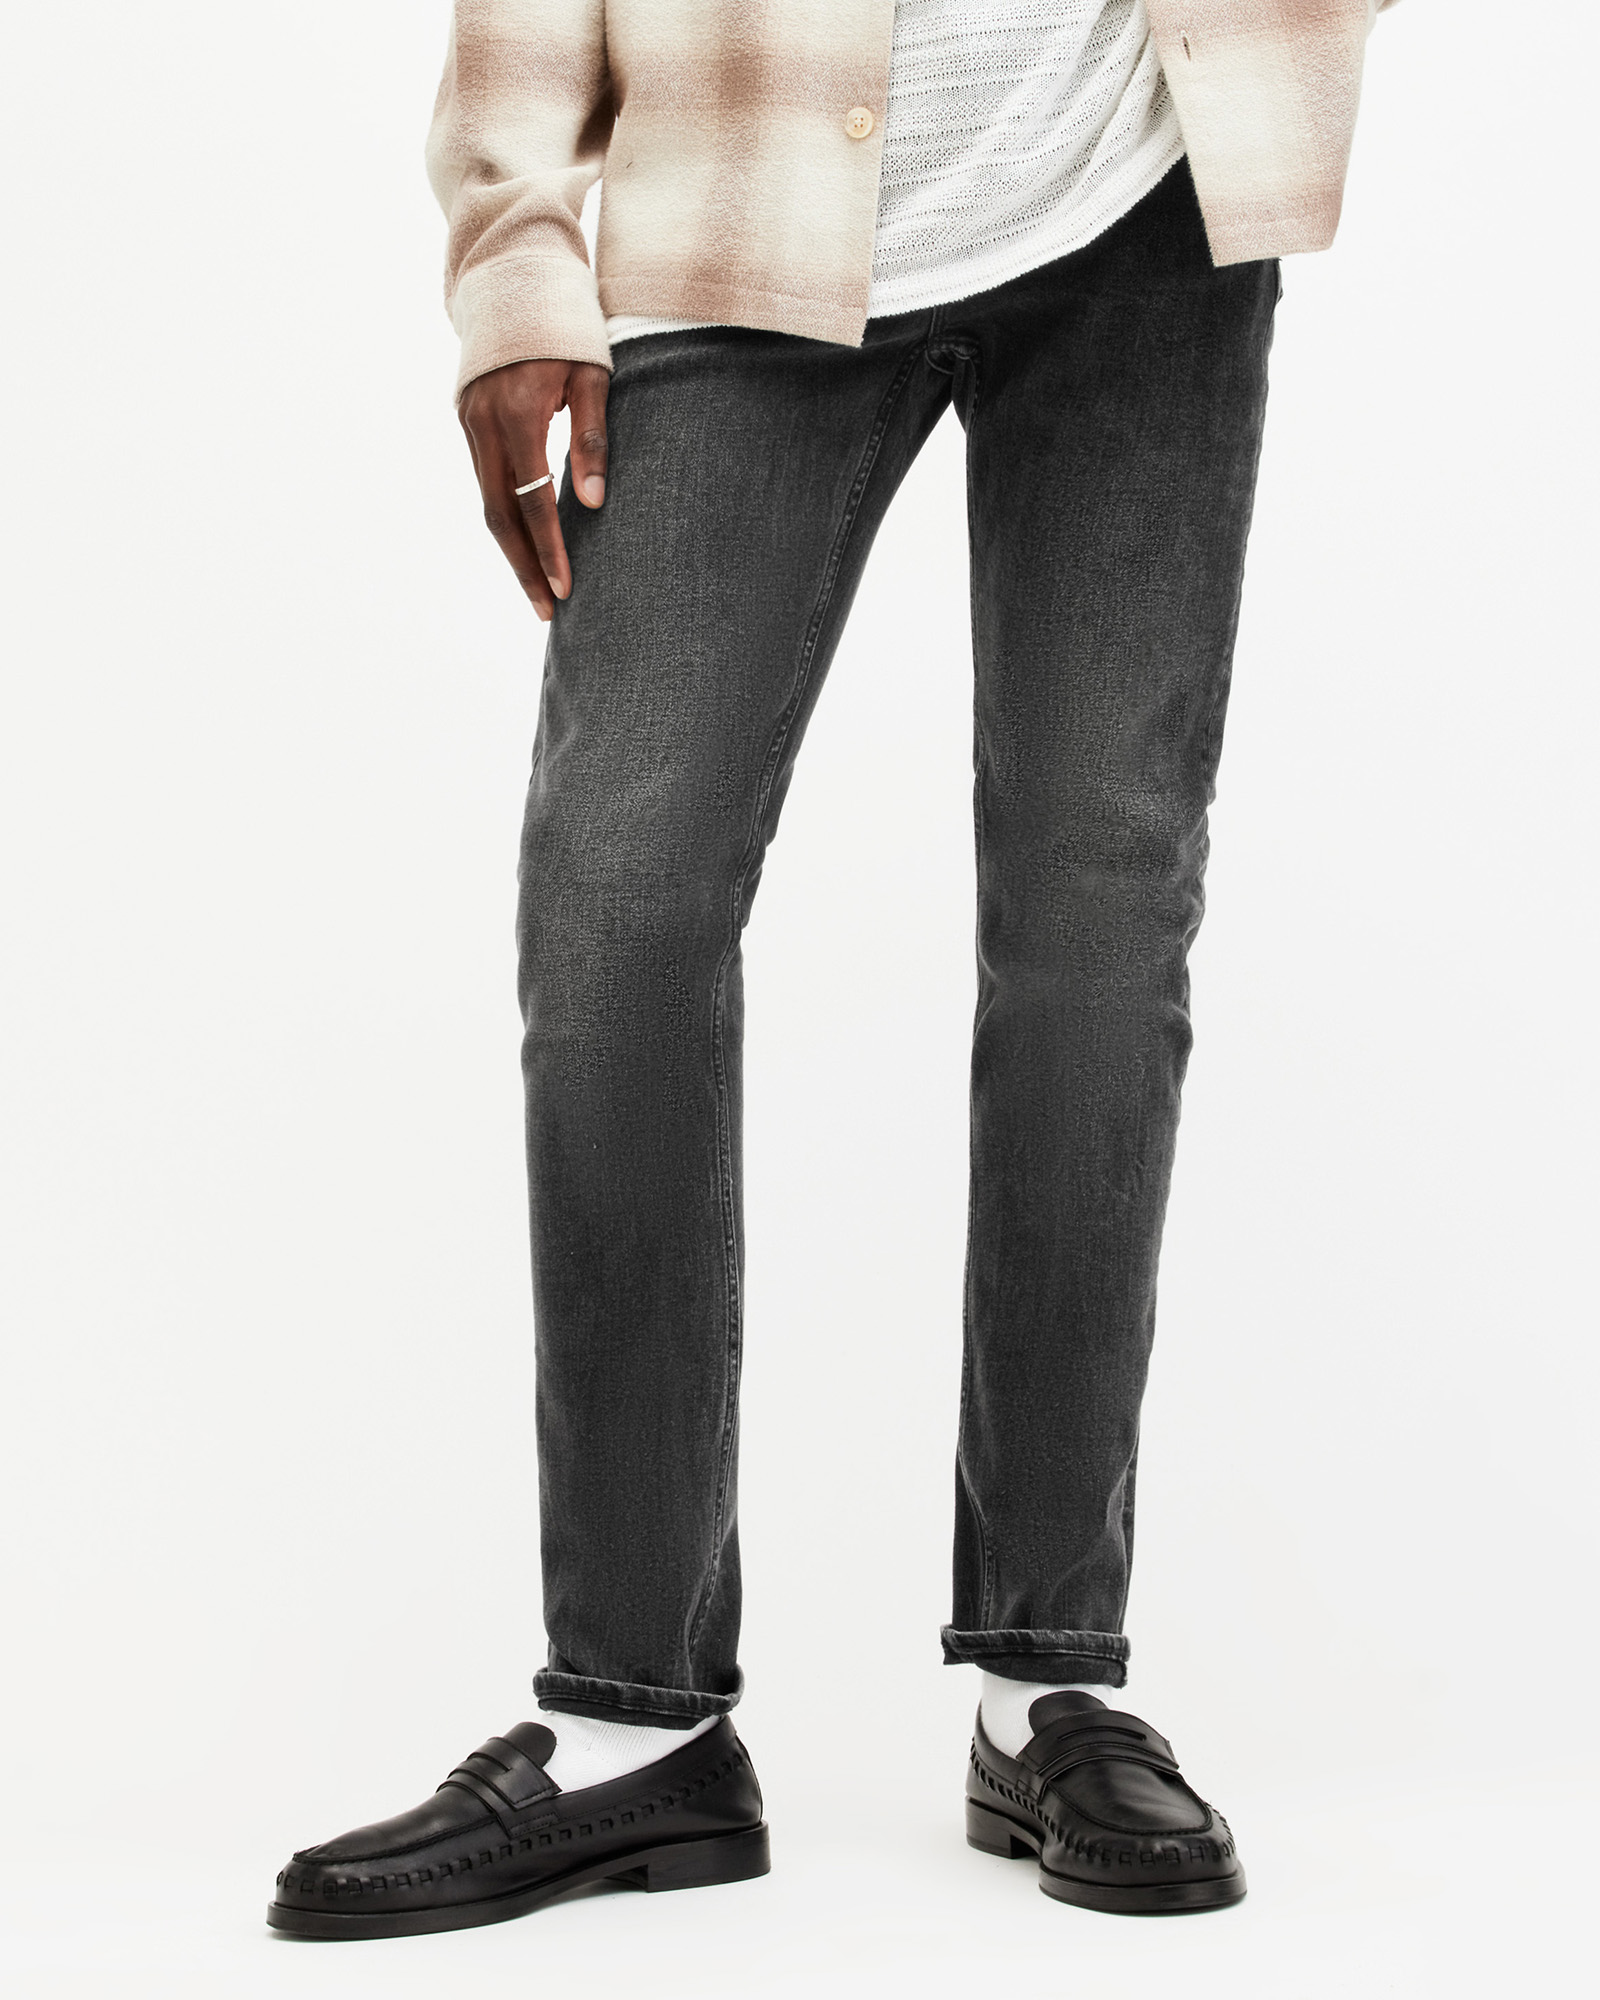 AllSaints Men's Cotton Traditional Cigarette Skinny Jeans, Black, Size: 34/L32